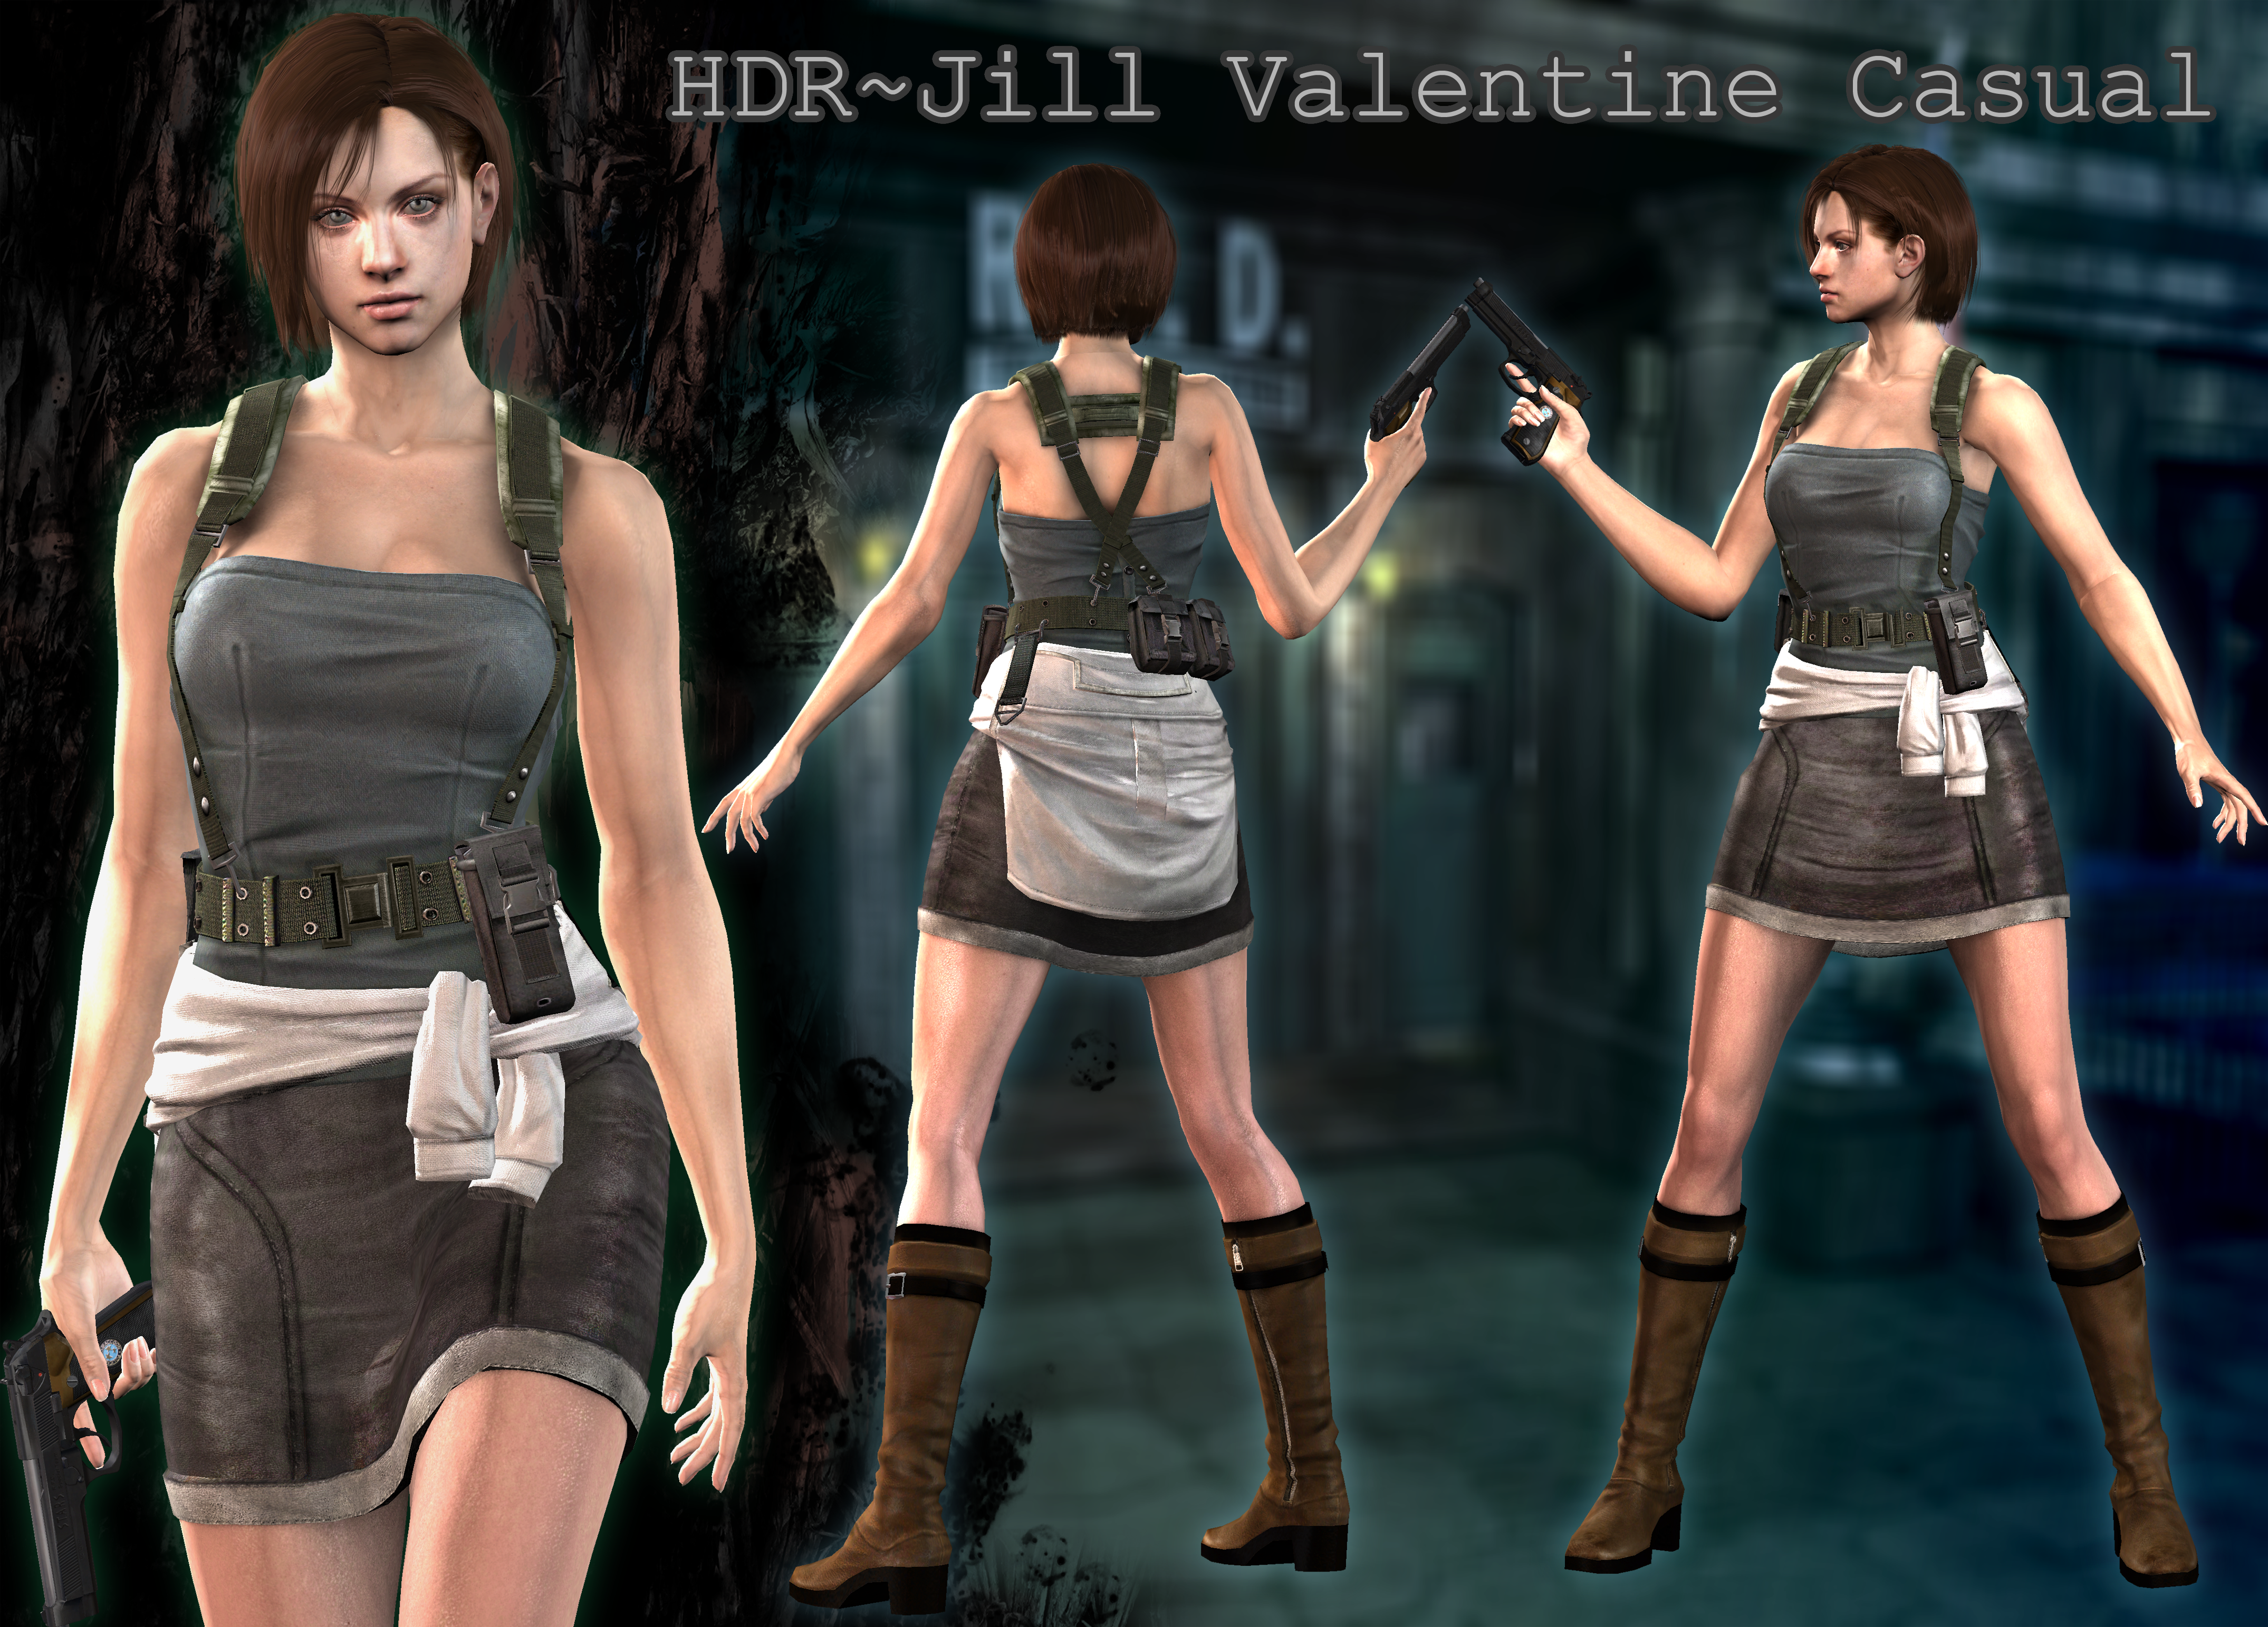 Resident Evil 2 Remake Mod : Jill Valentine Resident Evil 3 